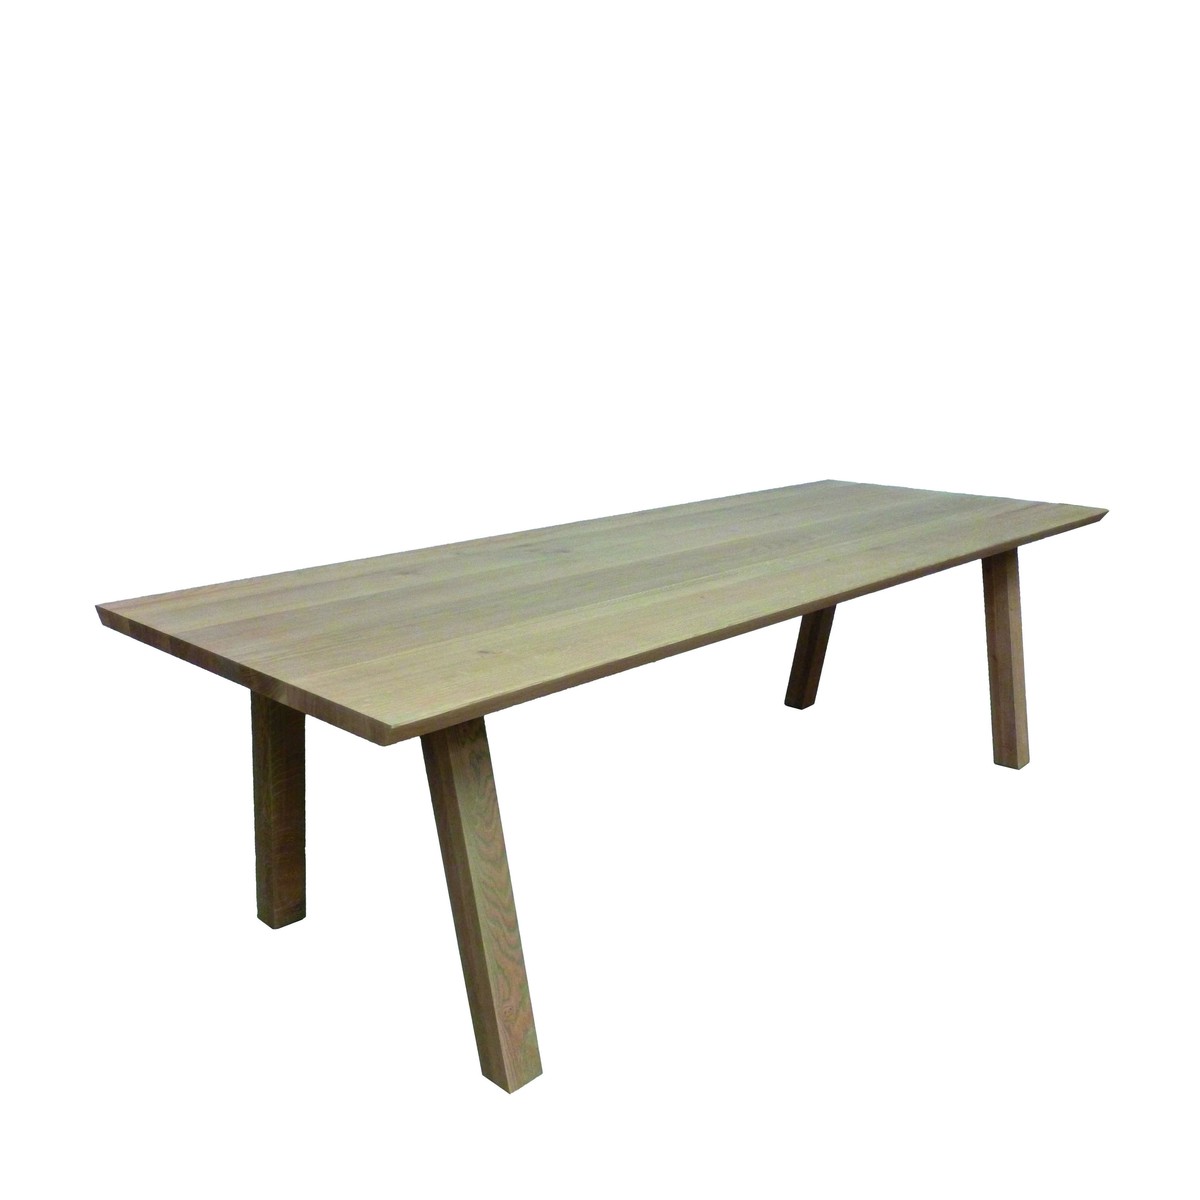   Table Nero Seven rectangulaire  160x100x77cm